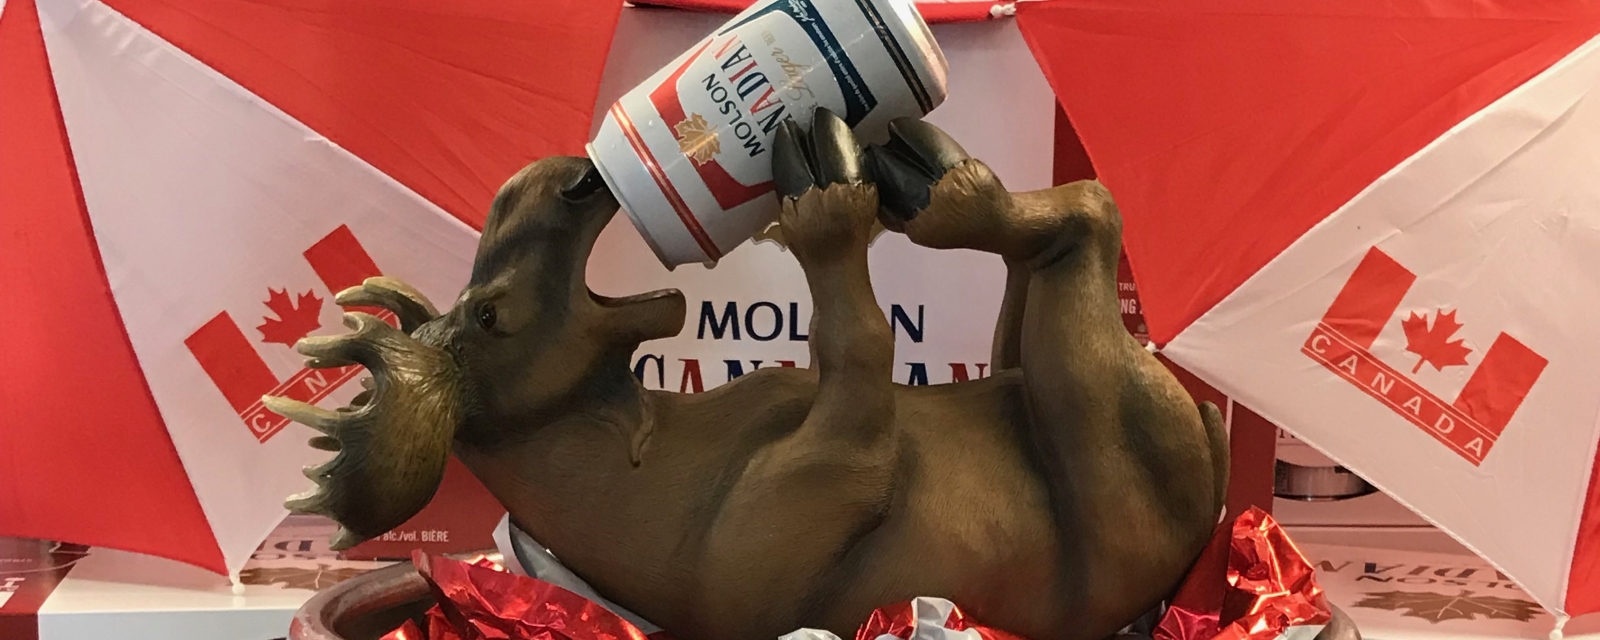 moose drinking beer